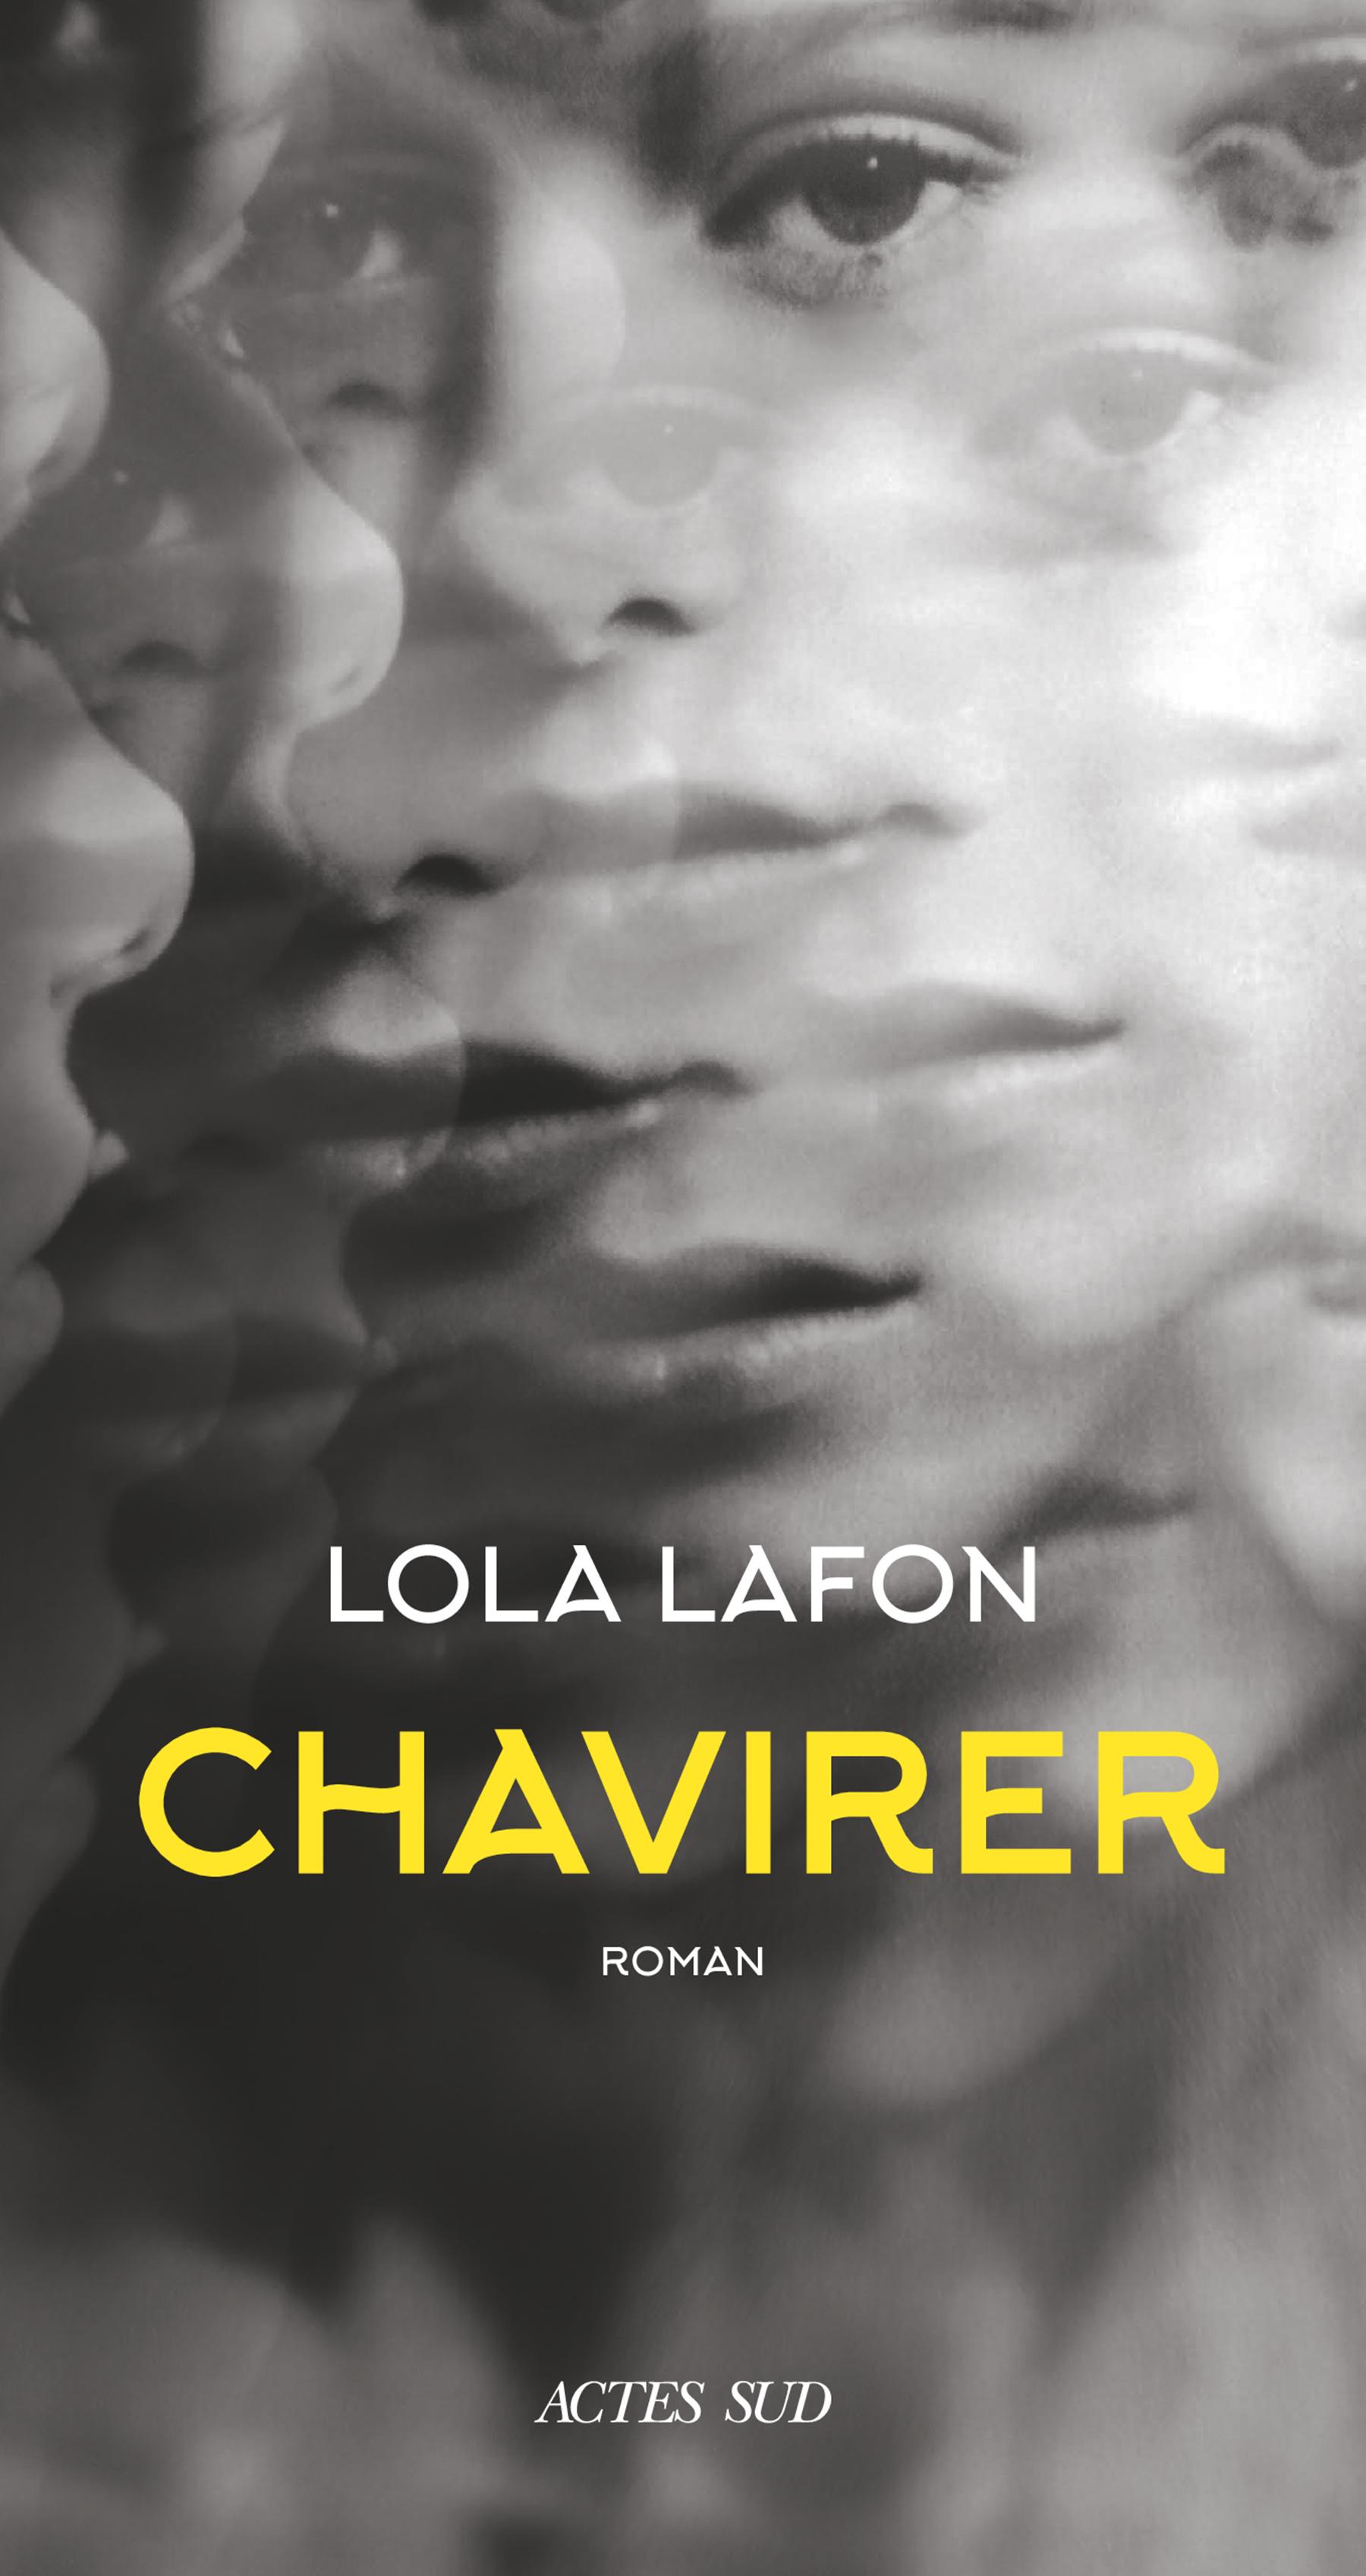 La couverture du livre "Chavirer" de Lola Lafon. [Actes Sud]